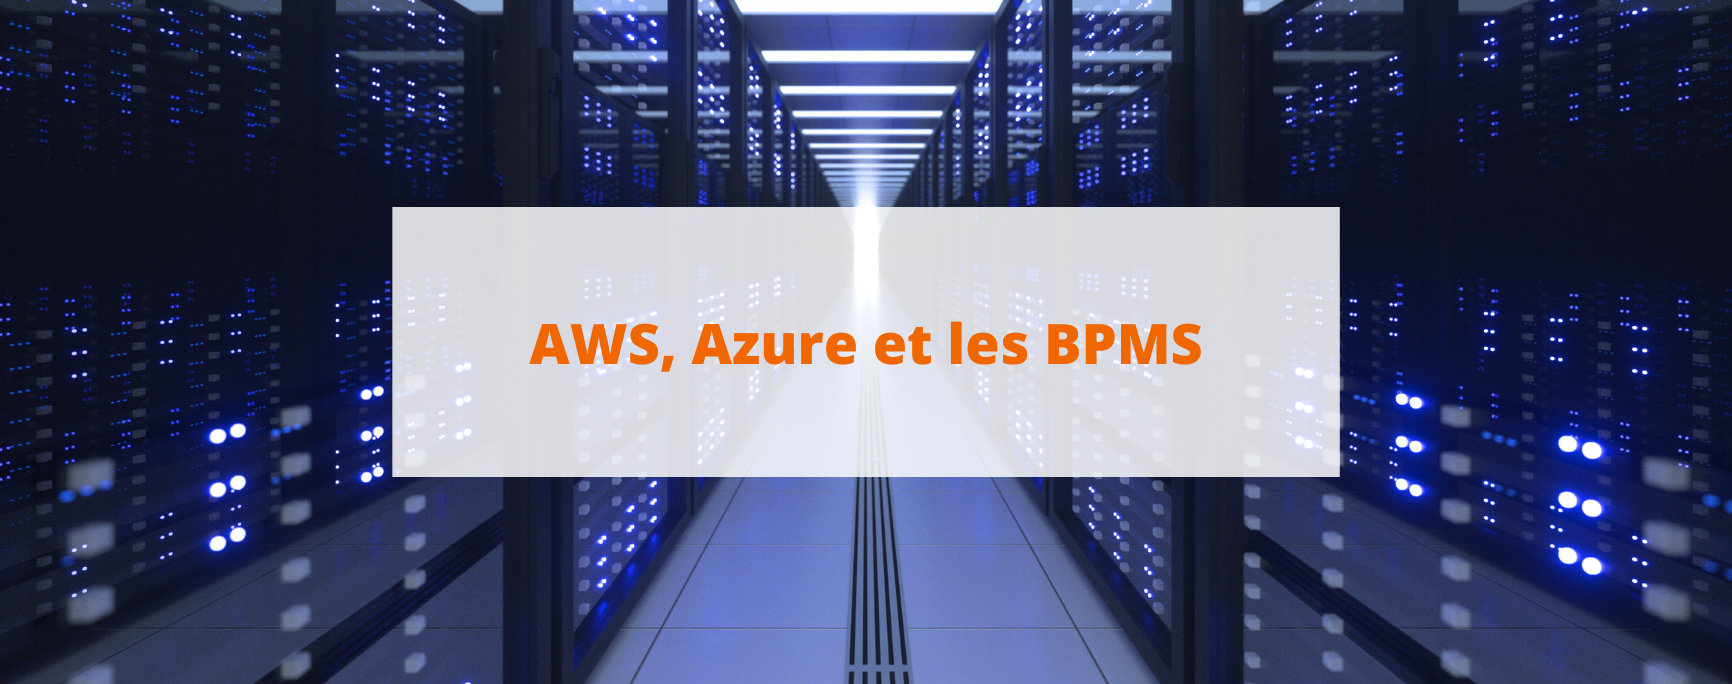 AWS, Azure et les BPMS